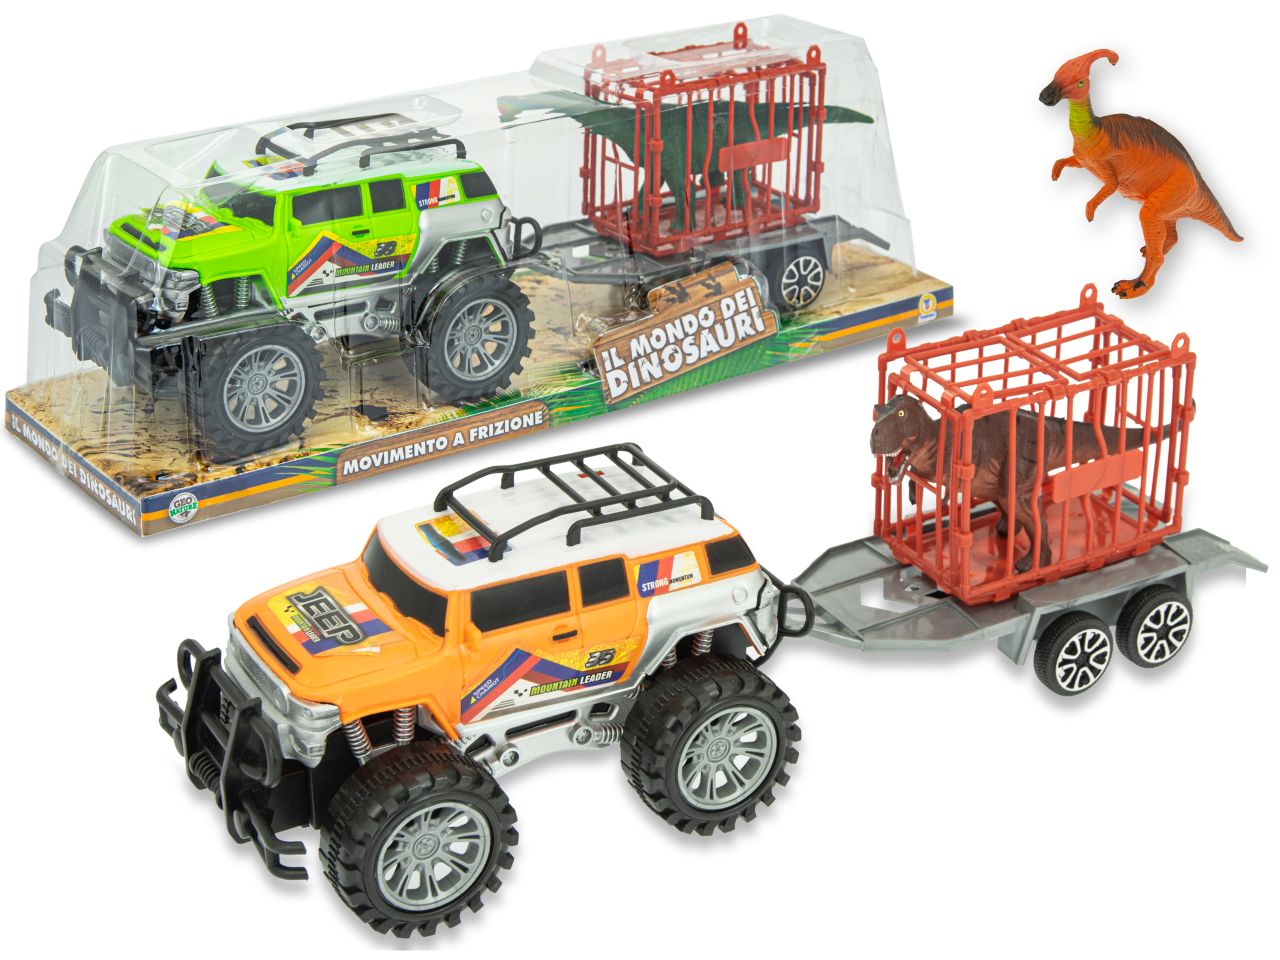 Play city - mondo dei dinosauri camion con trailer a frizione in 3 modelli assortiti